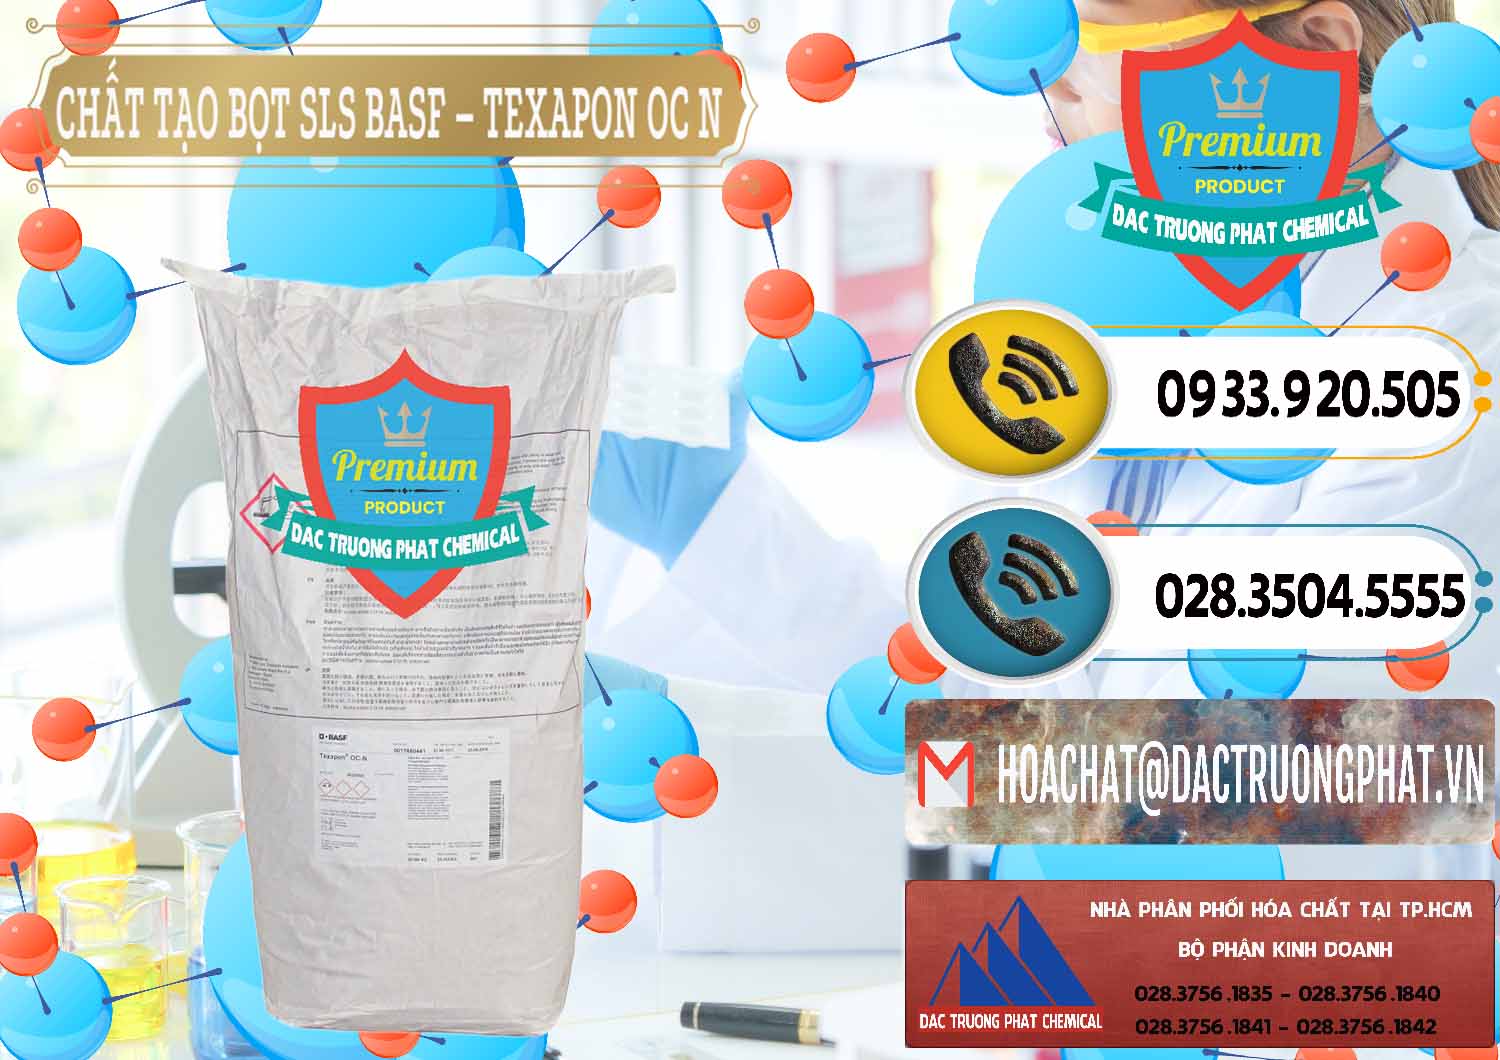 Chuyên cung cấp - bán Chất Tạo Bọt SLS - Sodium Lauryl Sulfate BASF Texapon OC N - 0049 - Đơn vị kinh doanh và cung cấp hóa chất tại TP.HCM - hoachatdetnhuom.vn